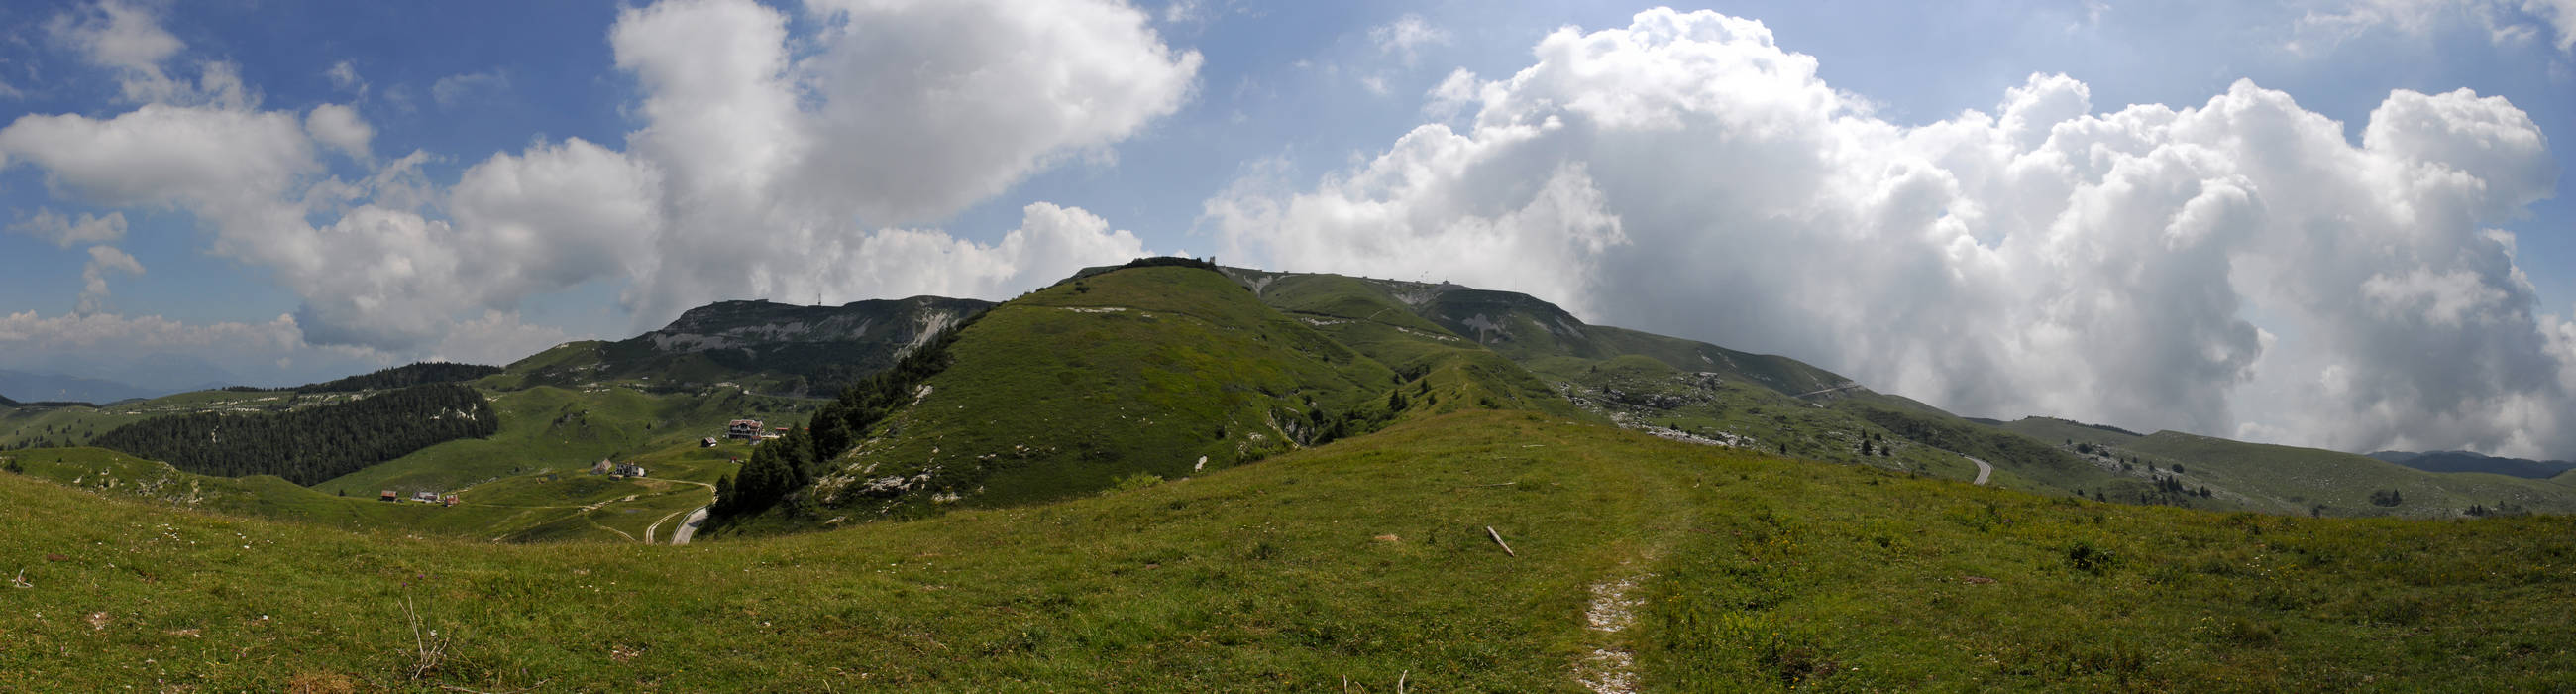 Monte Grappa, dorsale ovest monte Asolone, fotografia panoramica